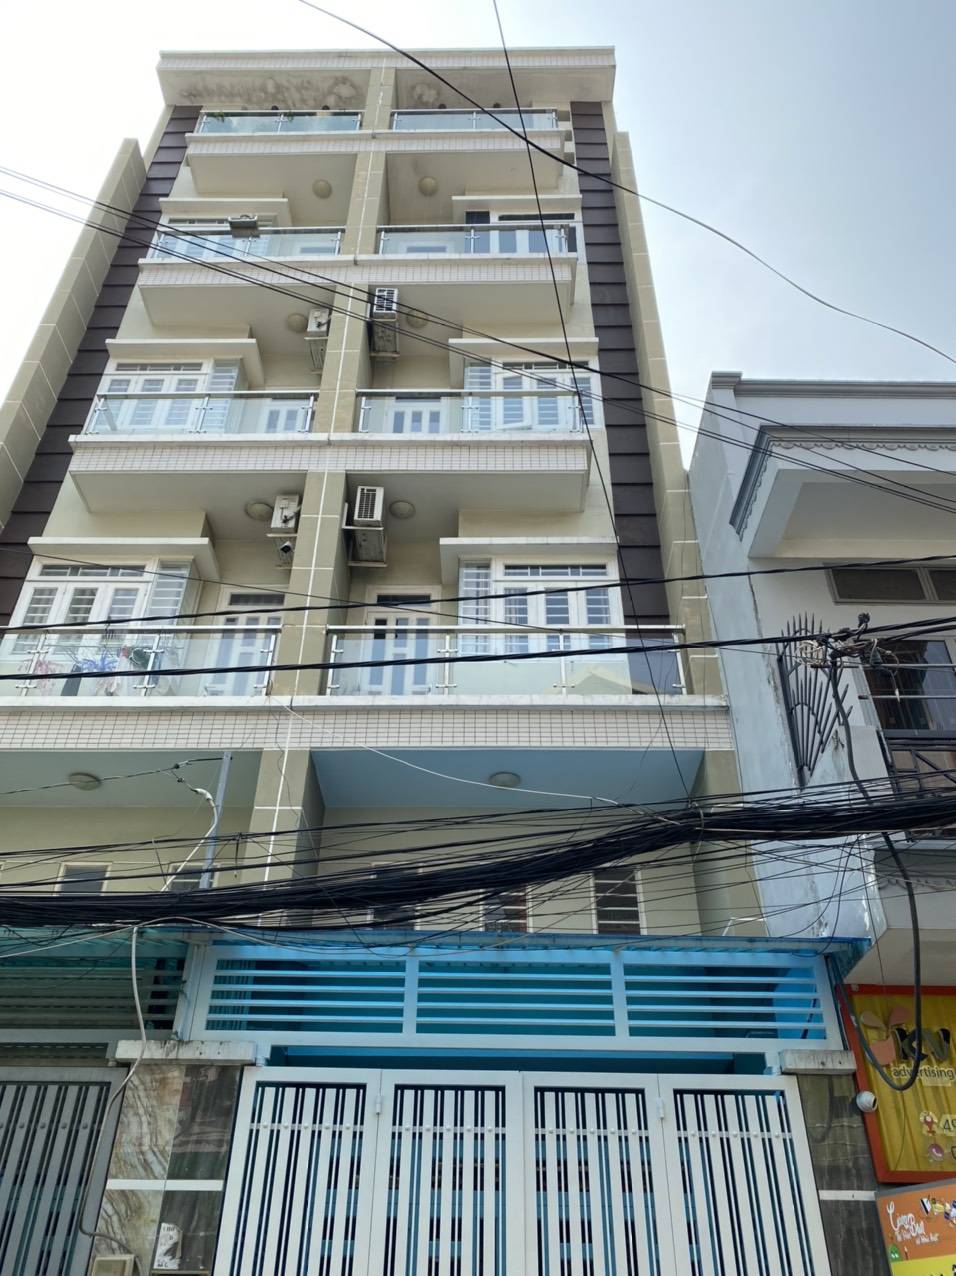 Bán nhà hẻm 4m Nguyễn Thái Sơn P5 (4.5 x 12m) nở hậu 6m lửng 3 lầu ST cách MT chỉ 10 căn nhà